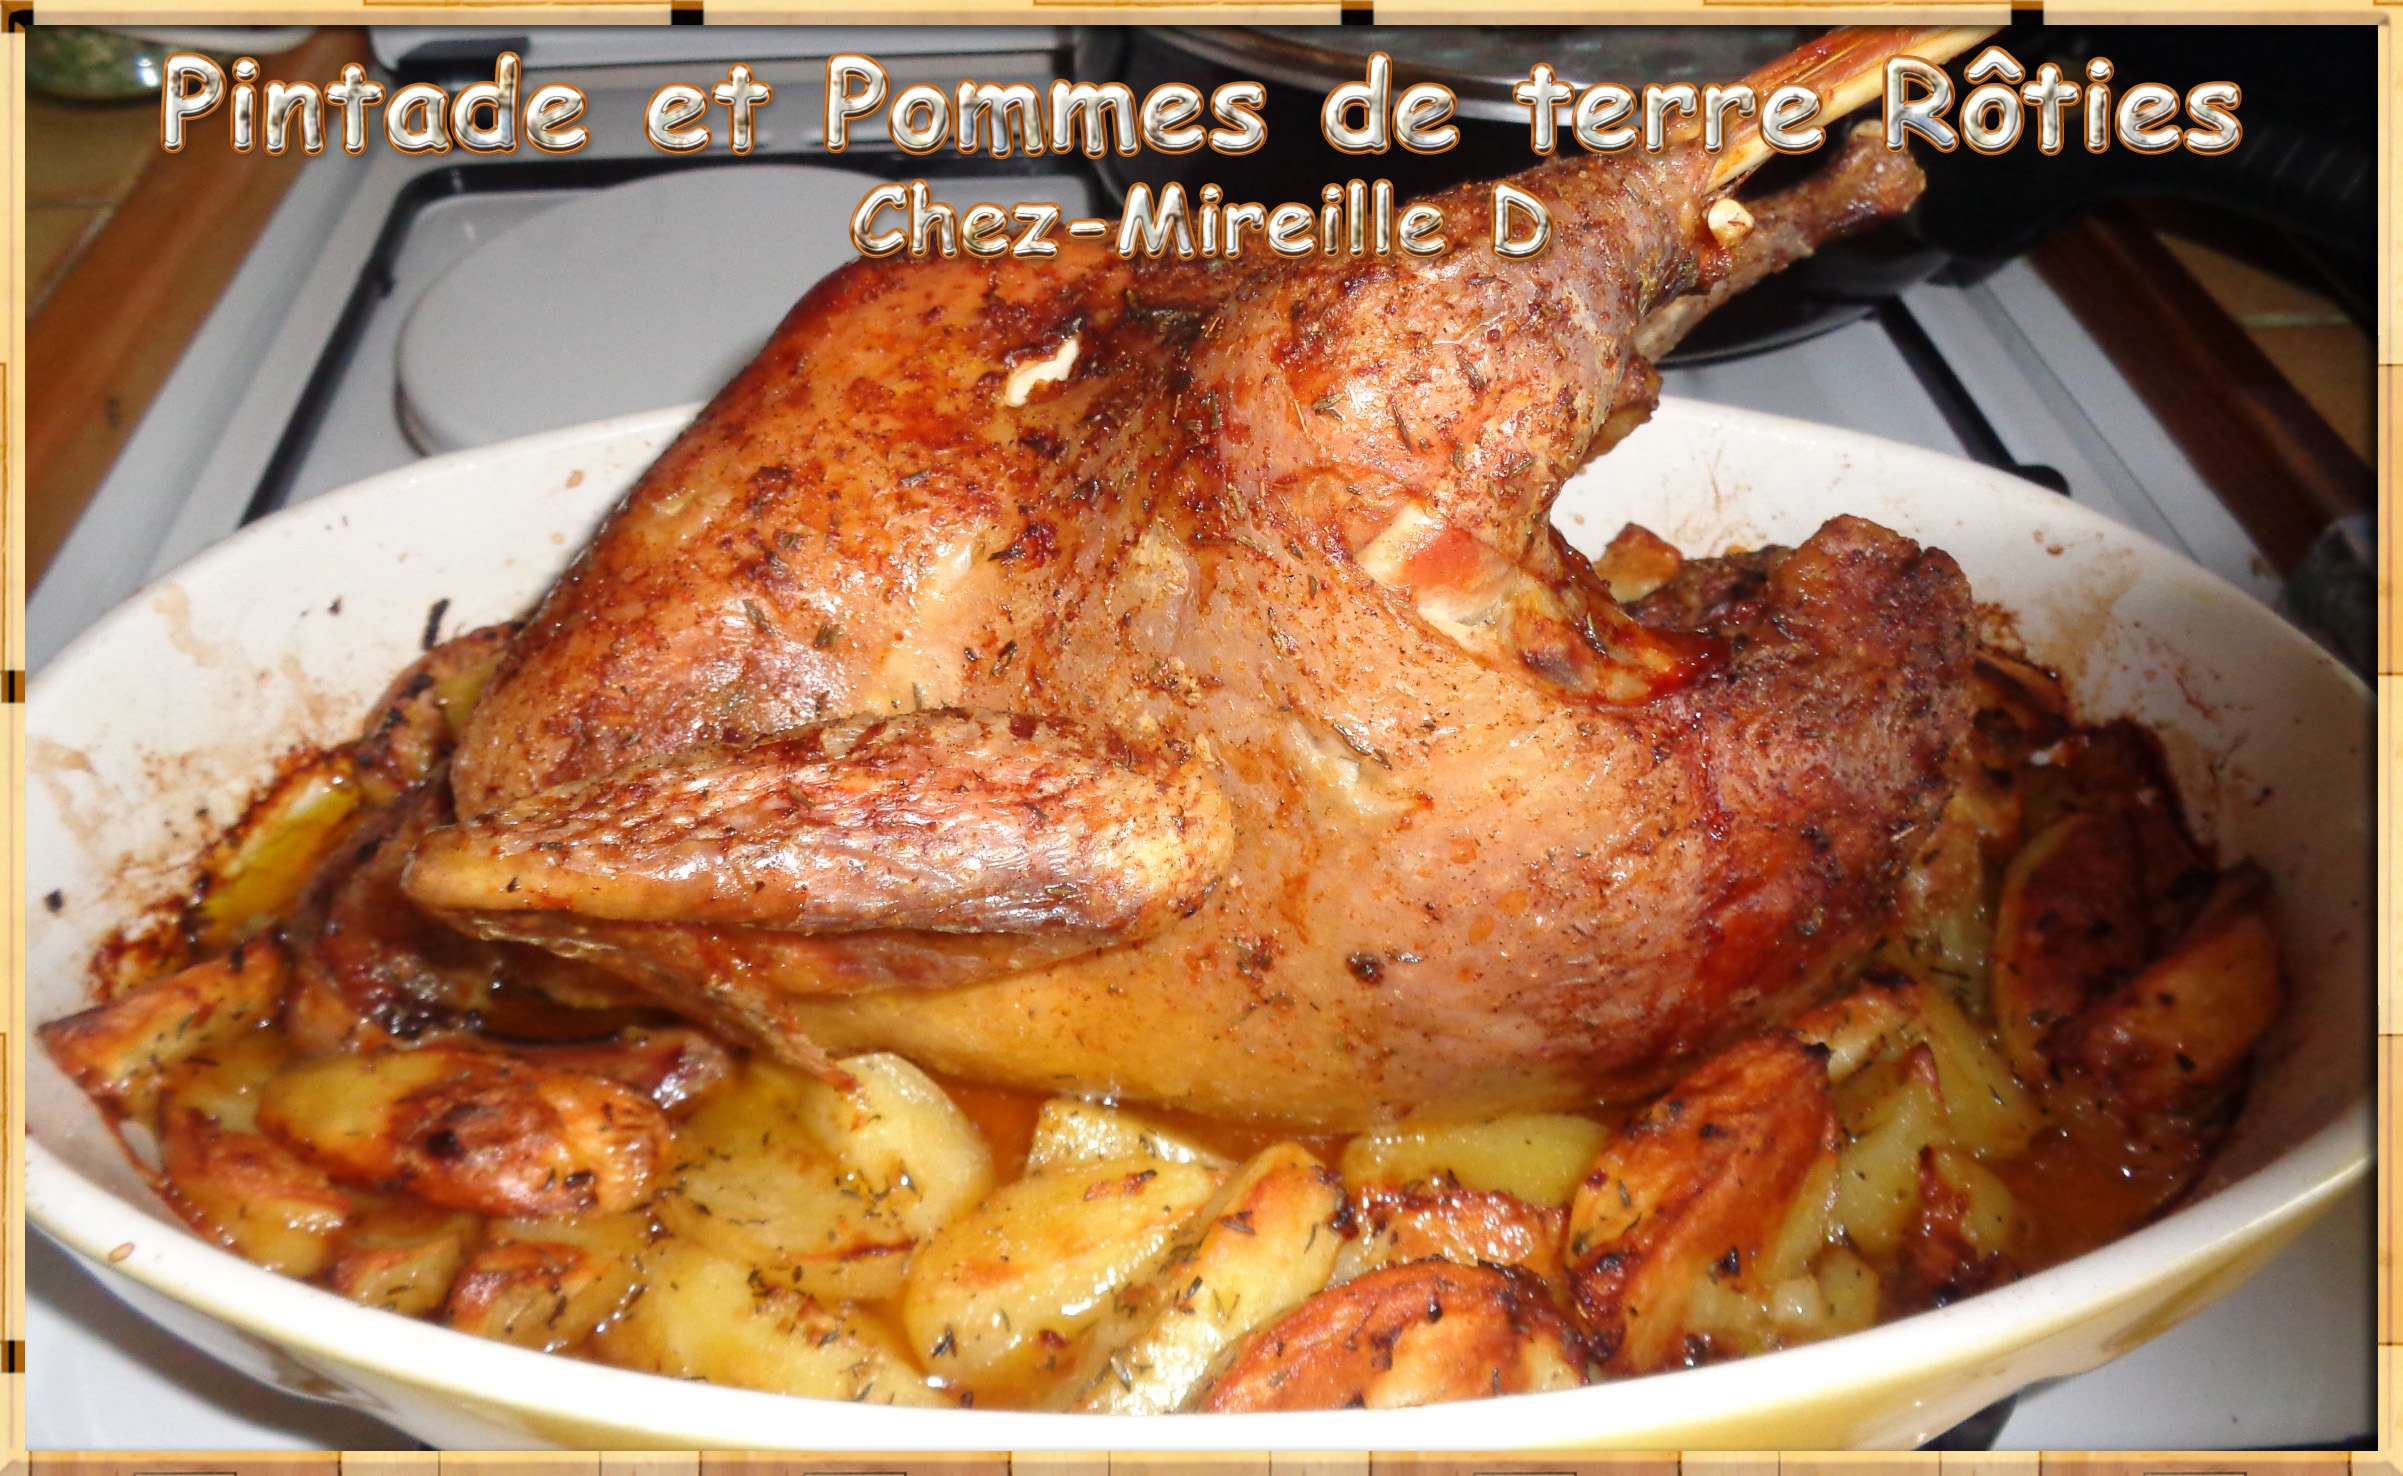 Pintade et Pommes de terre Rôties - Chez-Mireille D